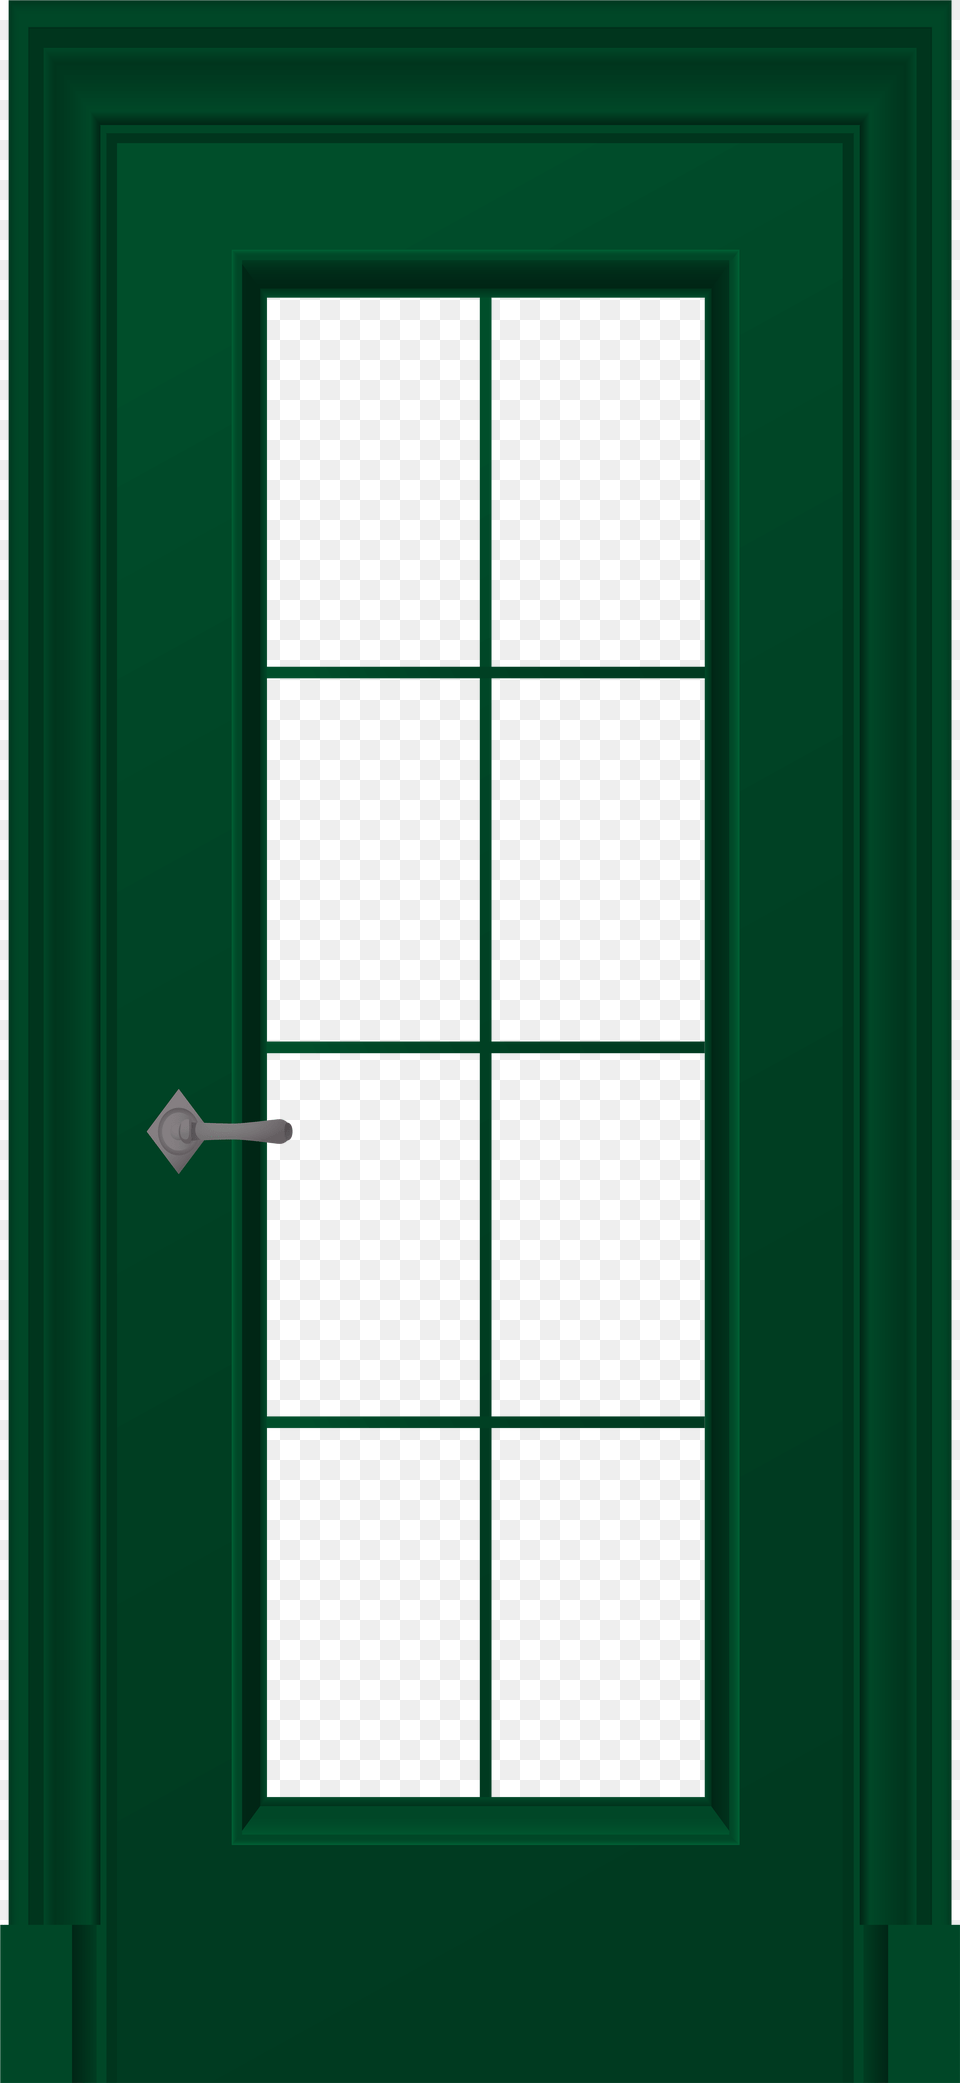 Green Door Clip Art Green Door, Architecture, Building, Housing, House Free Png